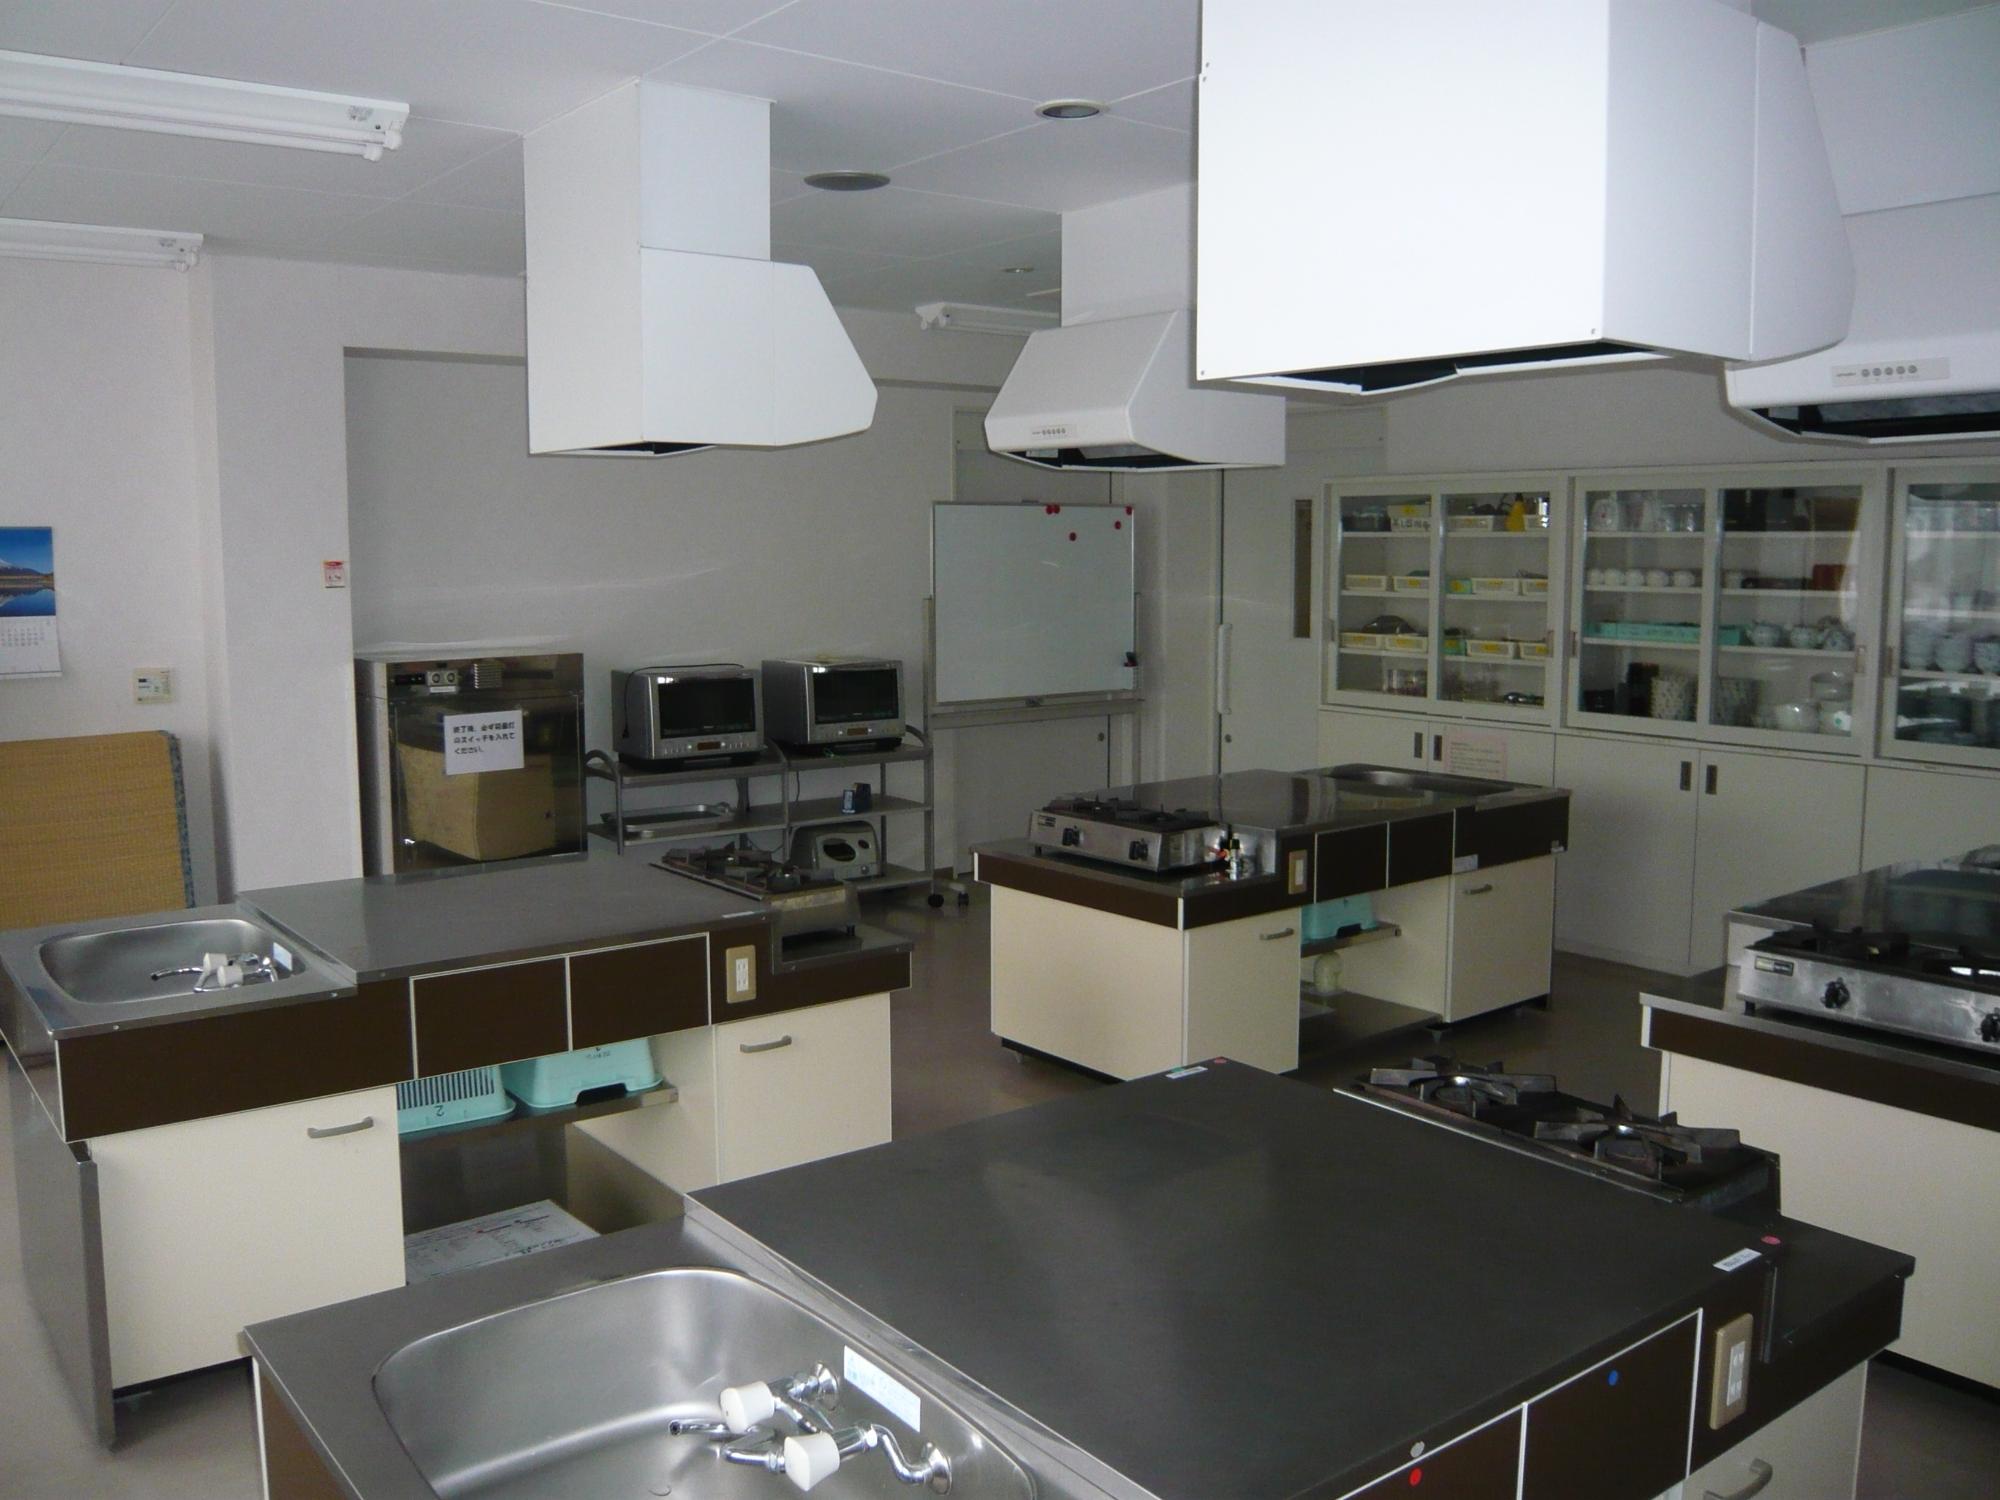 4台の調理台と調理器具等が完備されている、定員25名の広さの調理室の写真